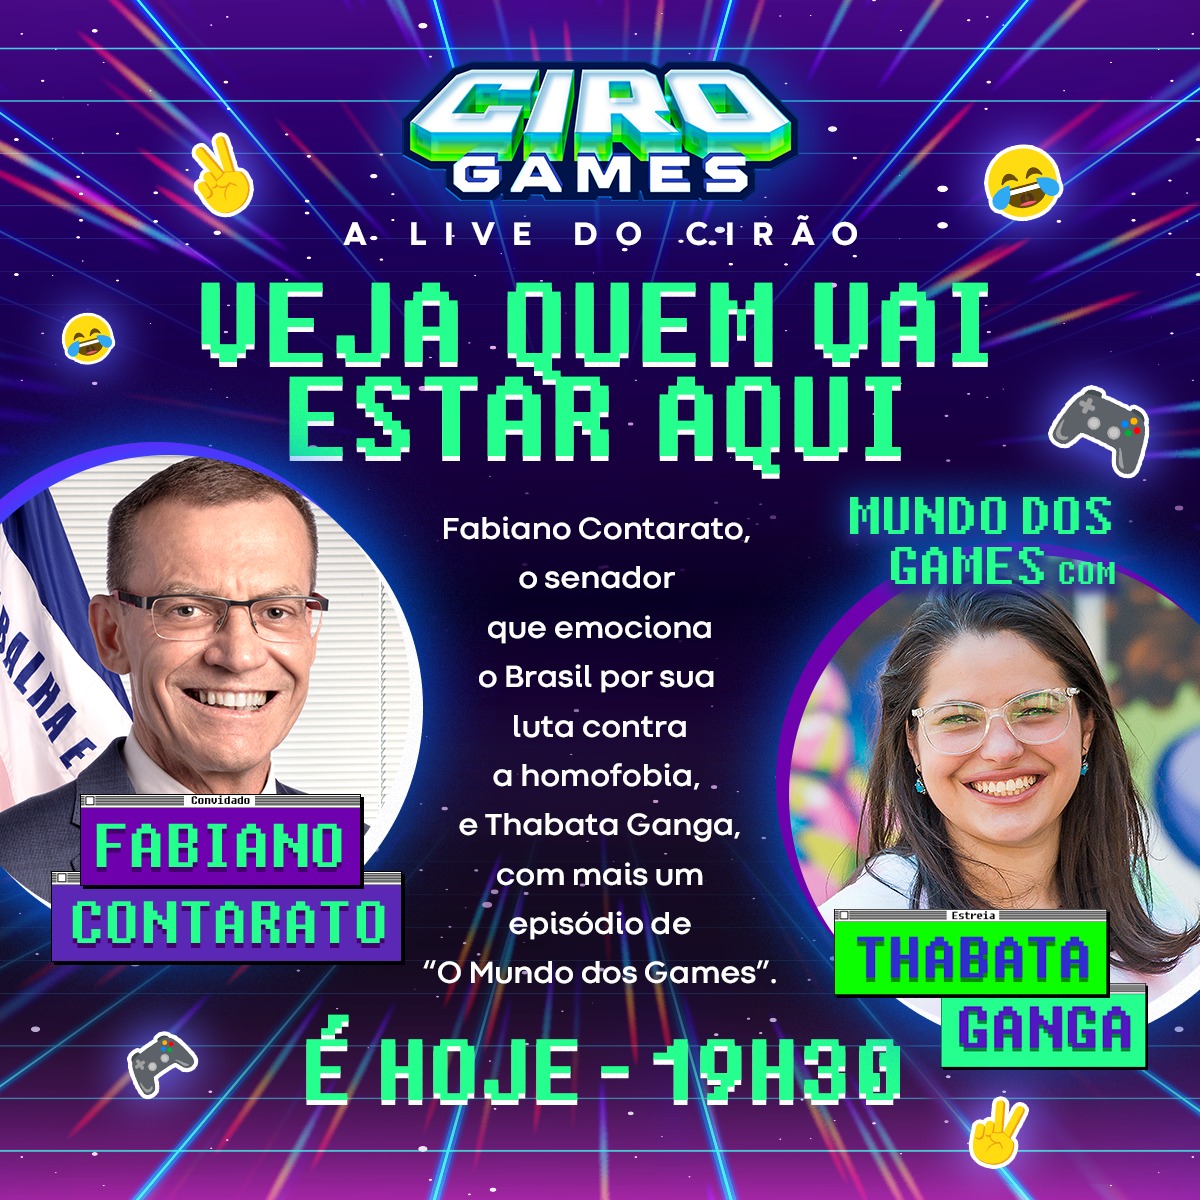 Ciro Games em São Paulo